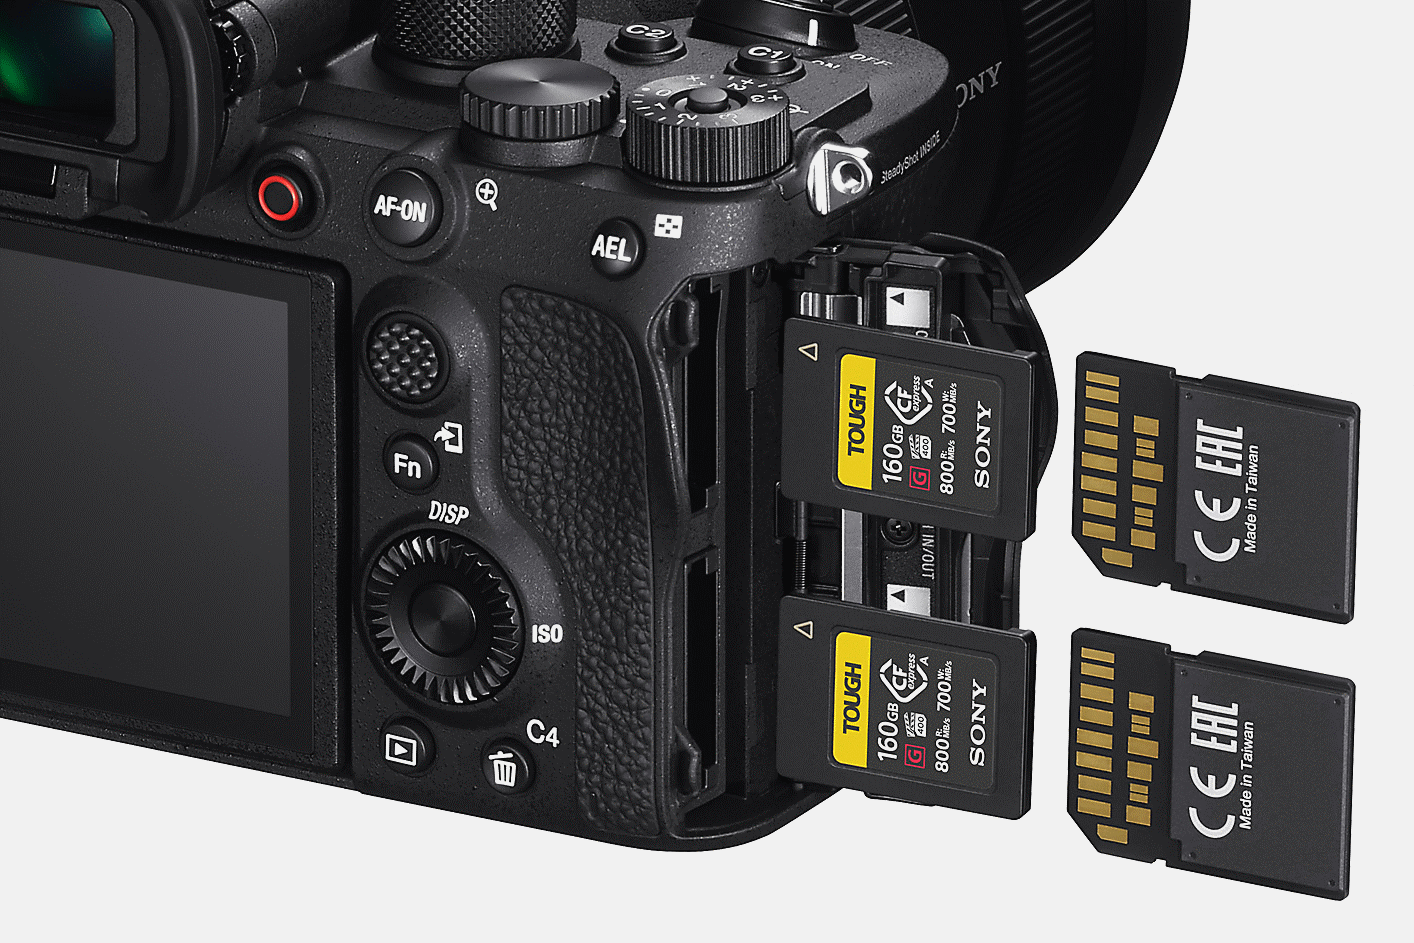 Vista posterior de la cámara con dos tarjetas SD